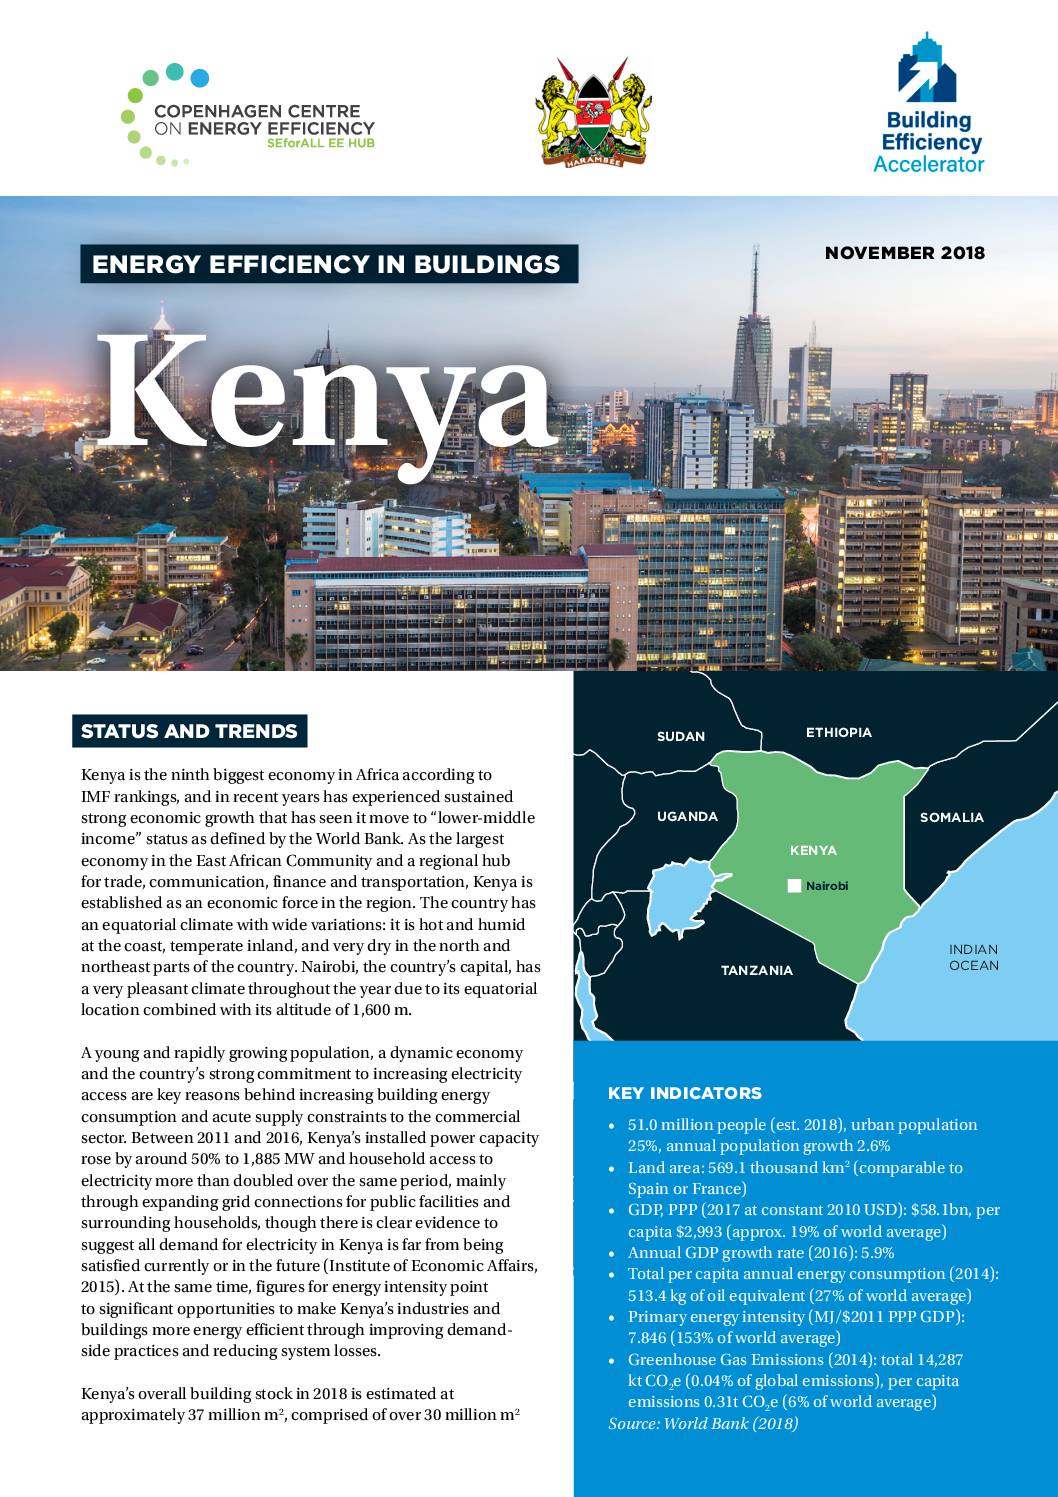 Energy Efficiency in Buildings; Kenya